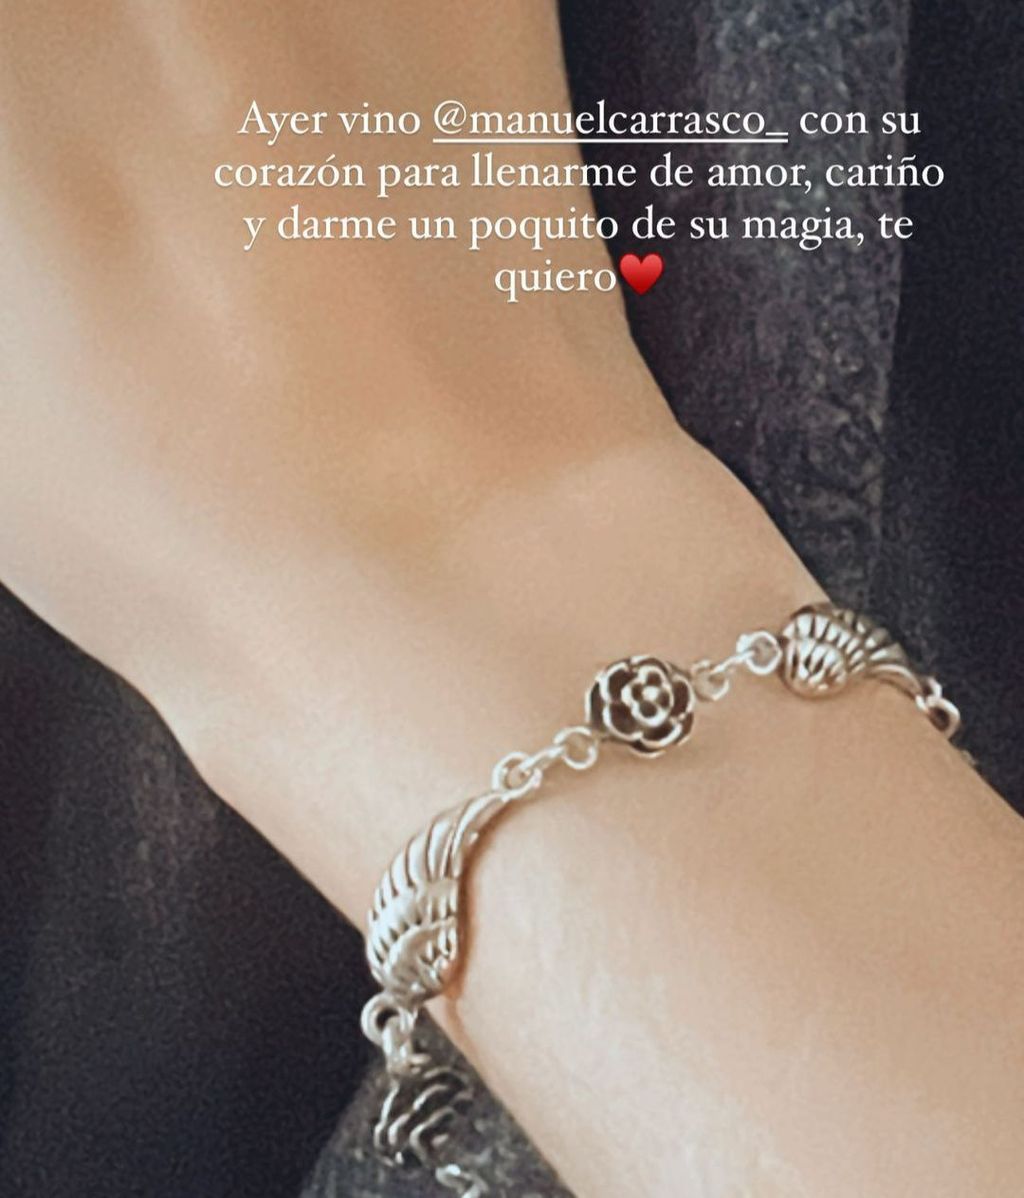 La pulsera que Manuel Carrasco ha regalado a Elena Huelva